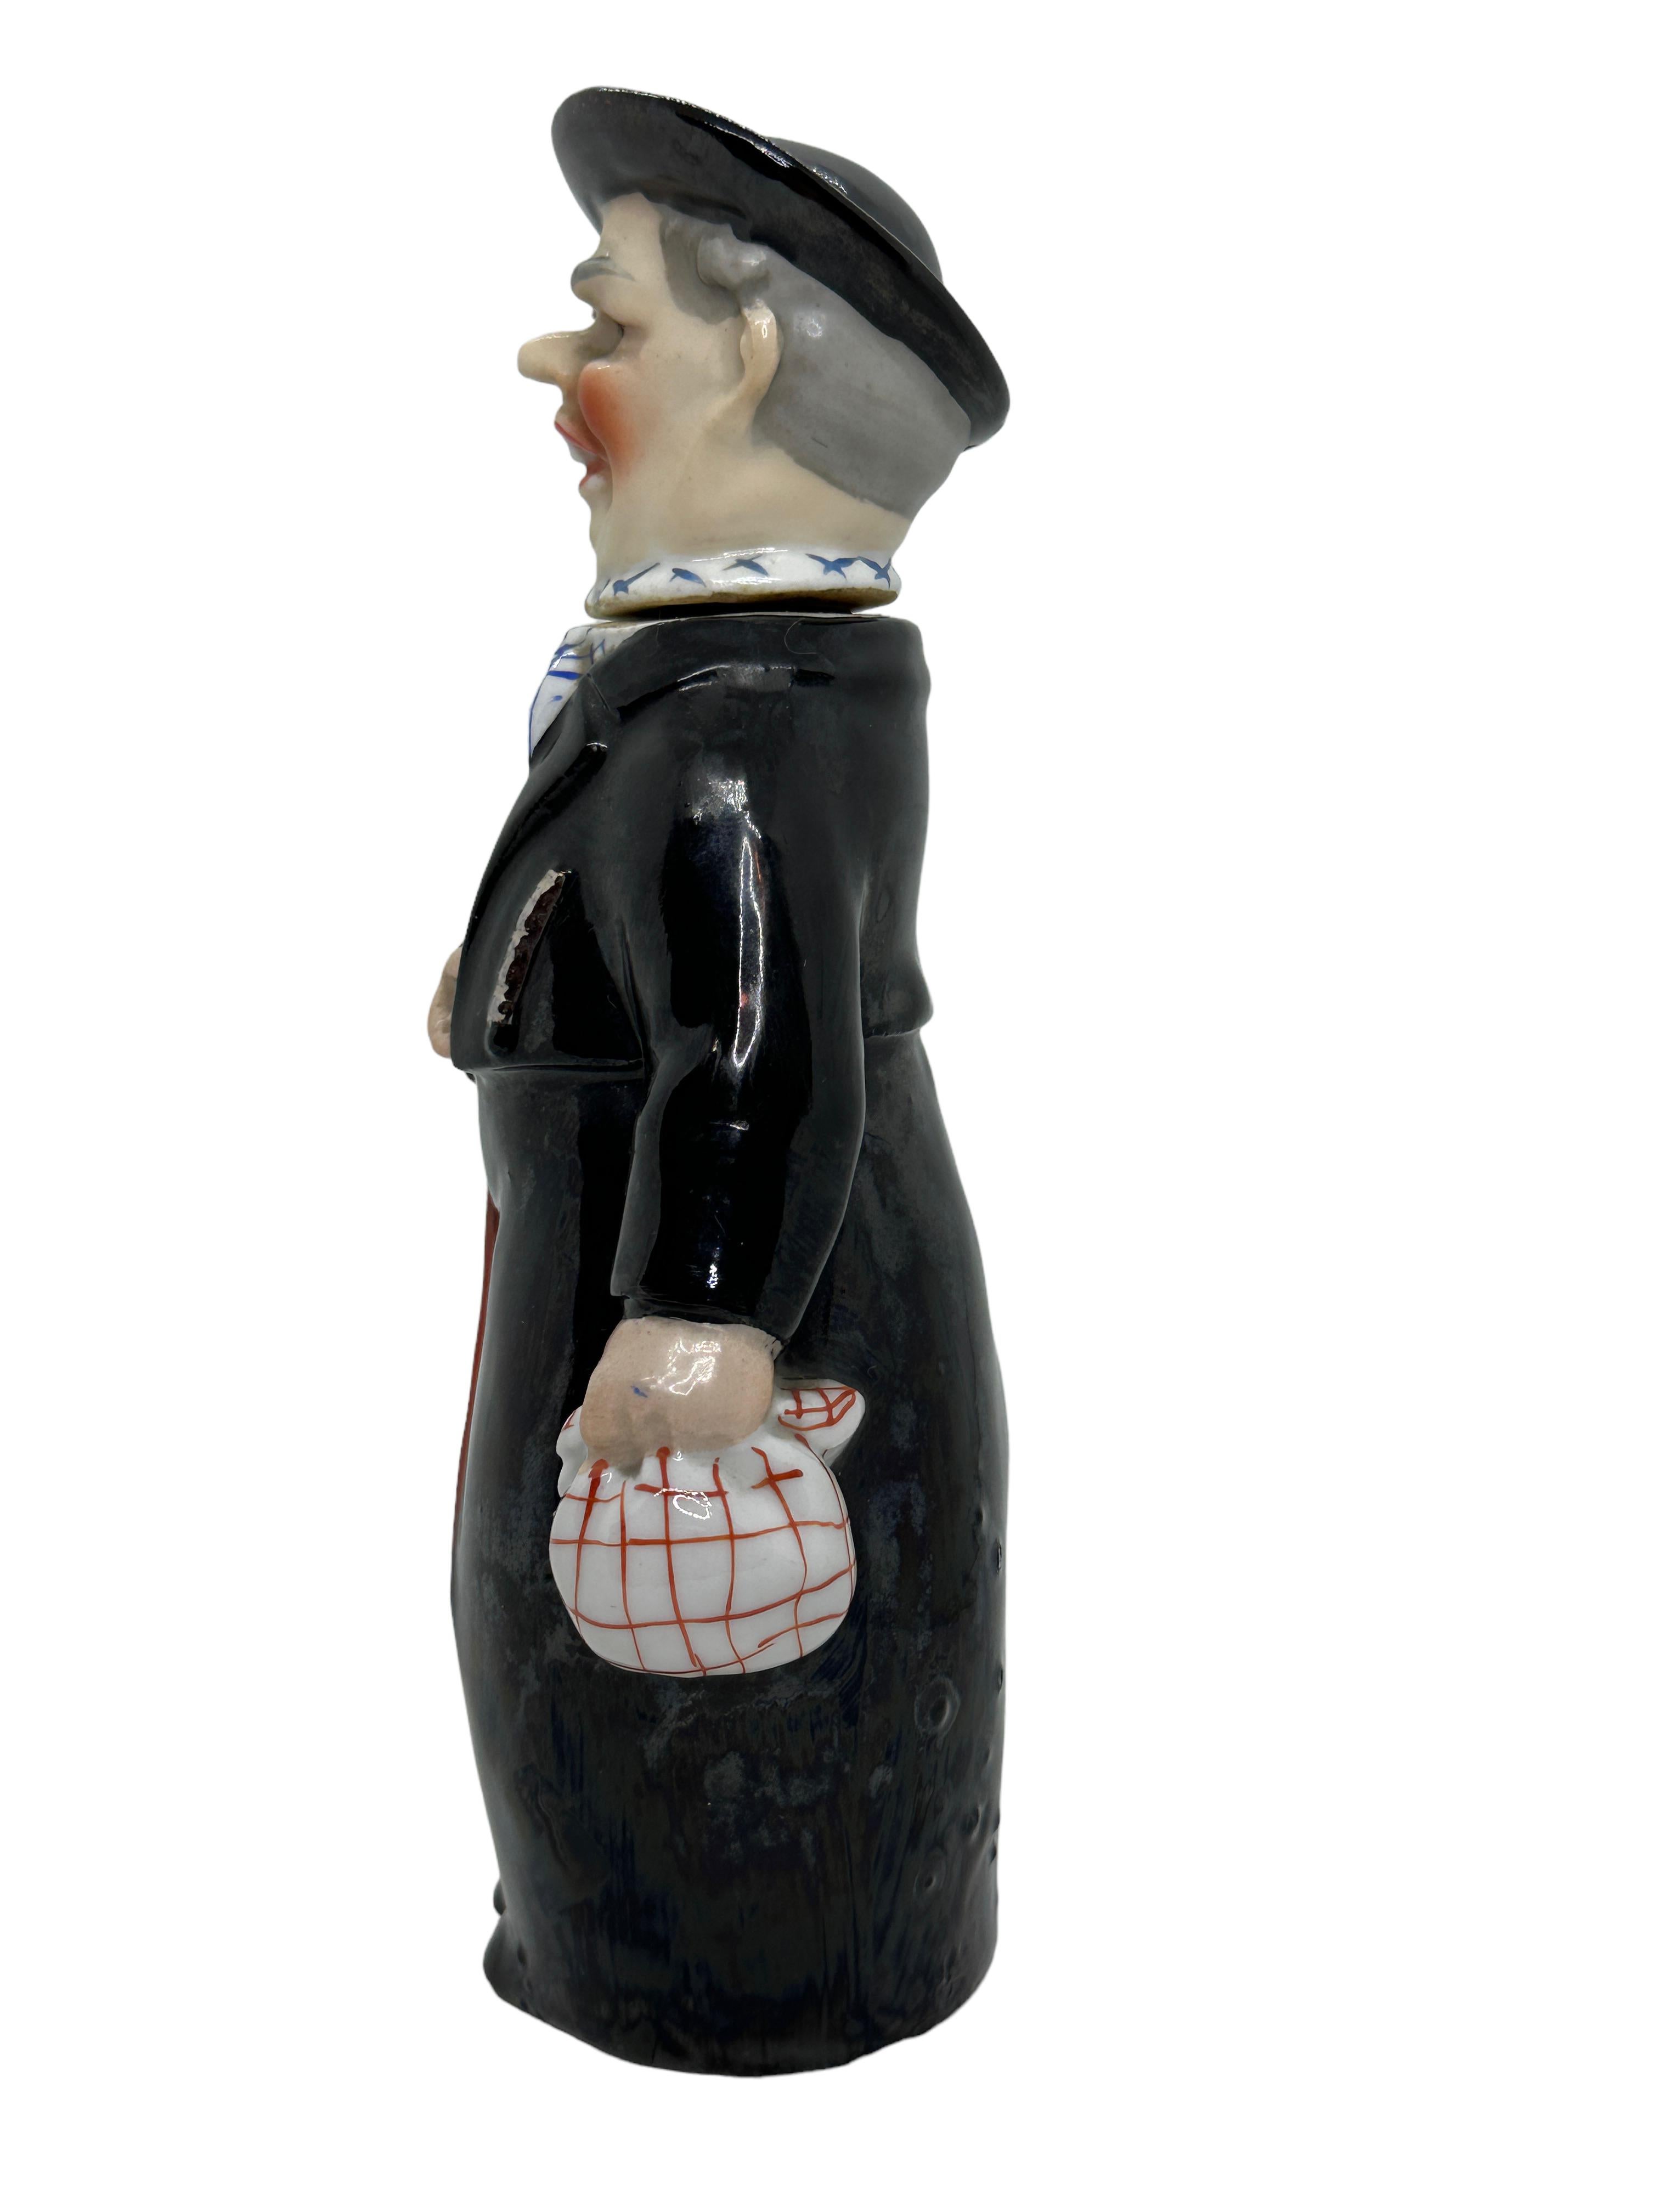 Une magnifique bouteille de caractère - le traditionnel prêtre de la Forêt-Noire. Cette bouteille de caractère a été fabriquée en Allemagne vers les années 1910 ou plus anciennes, attribuée à E. Bohne, Thuringia Allemagne. Pièce absolument